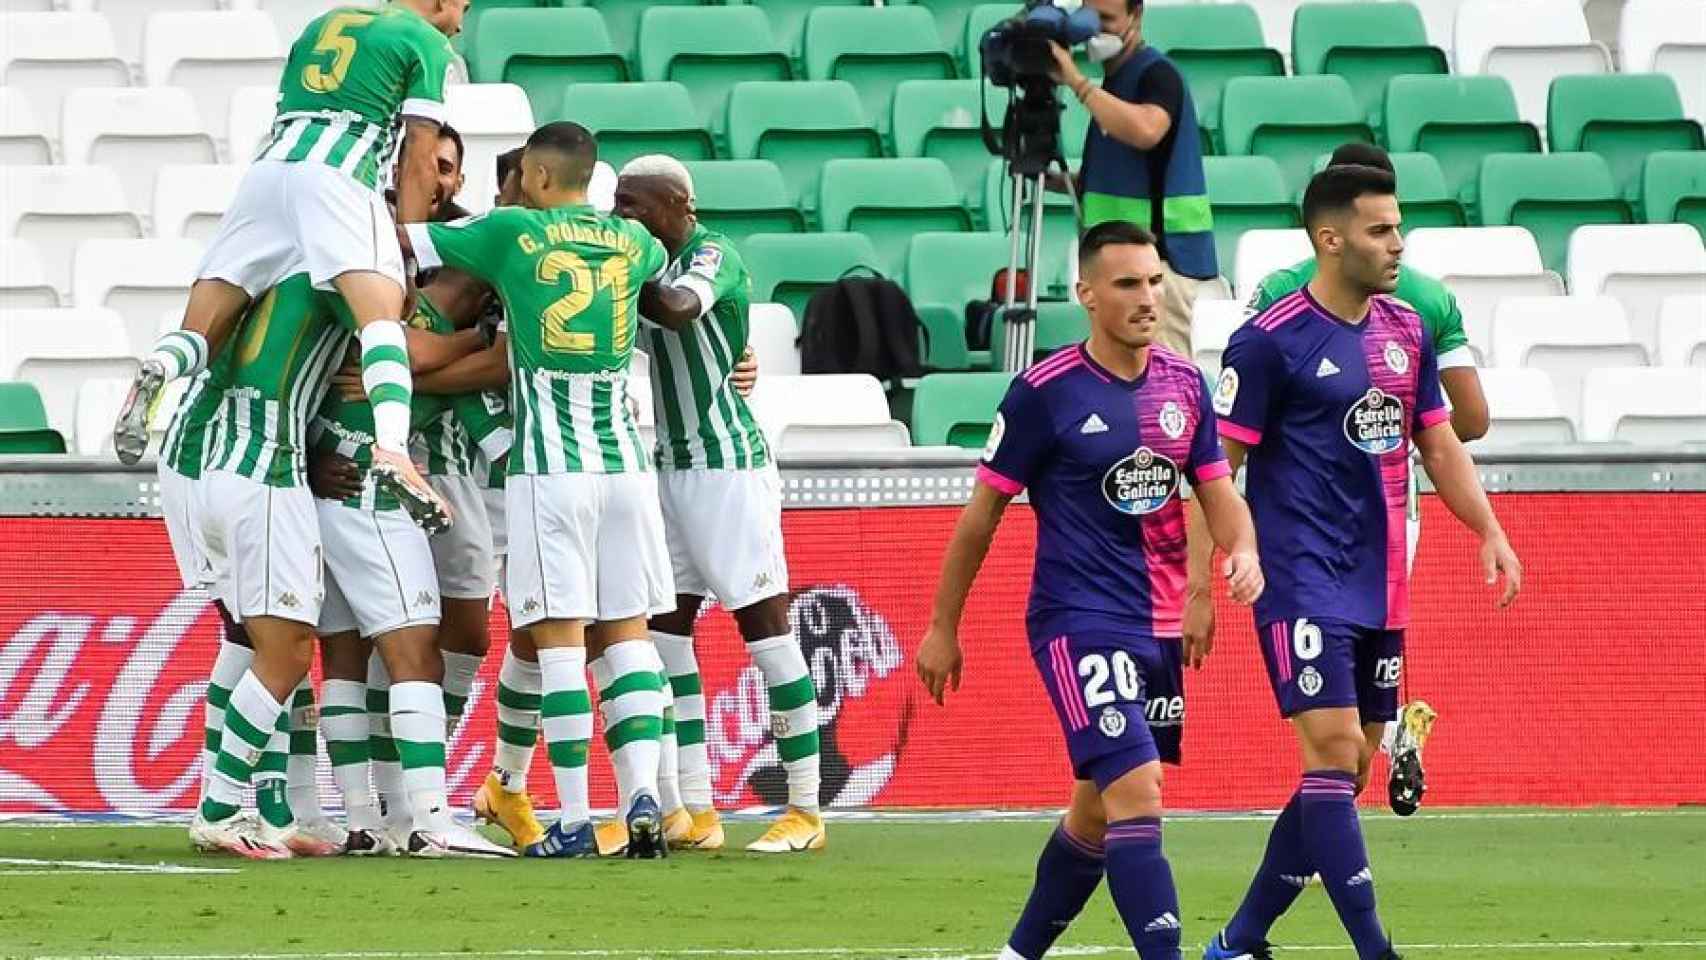 Piña de los jugadores del Betis ante el Valladolid en la jornada 2 de La Liga